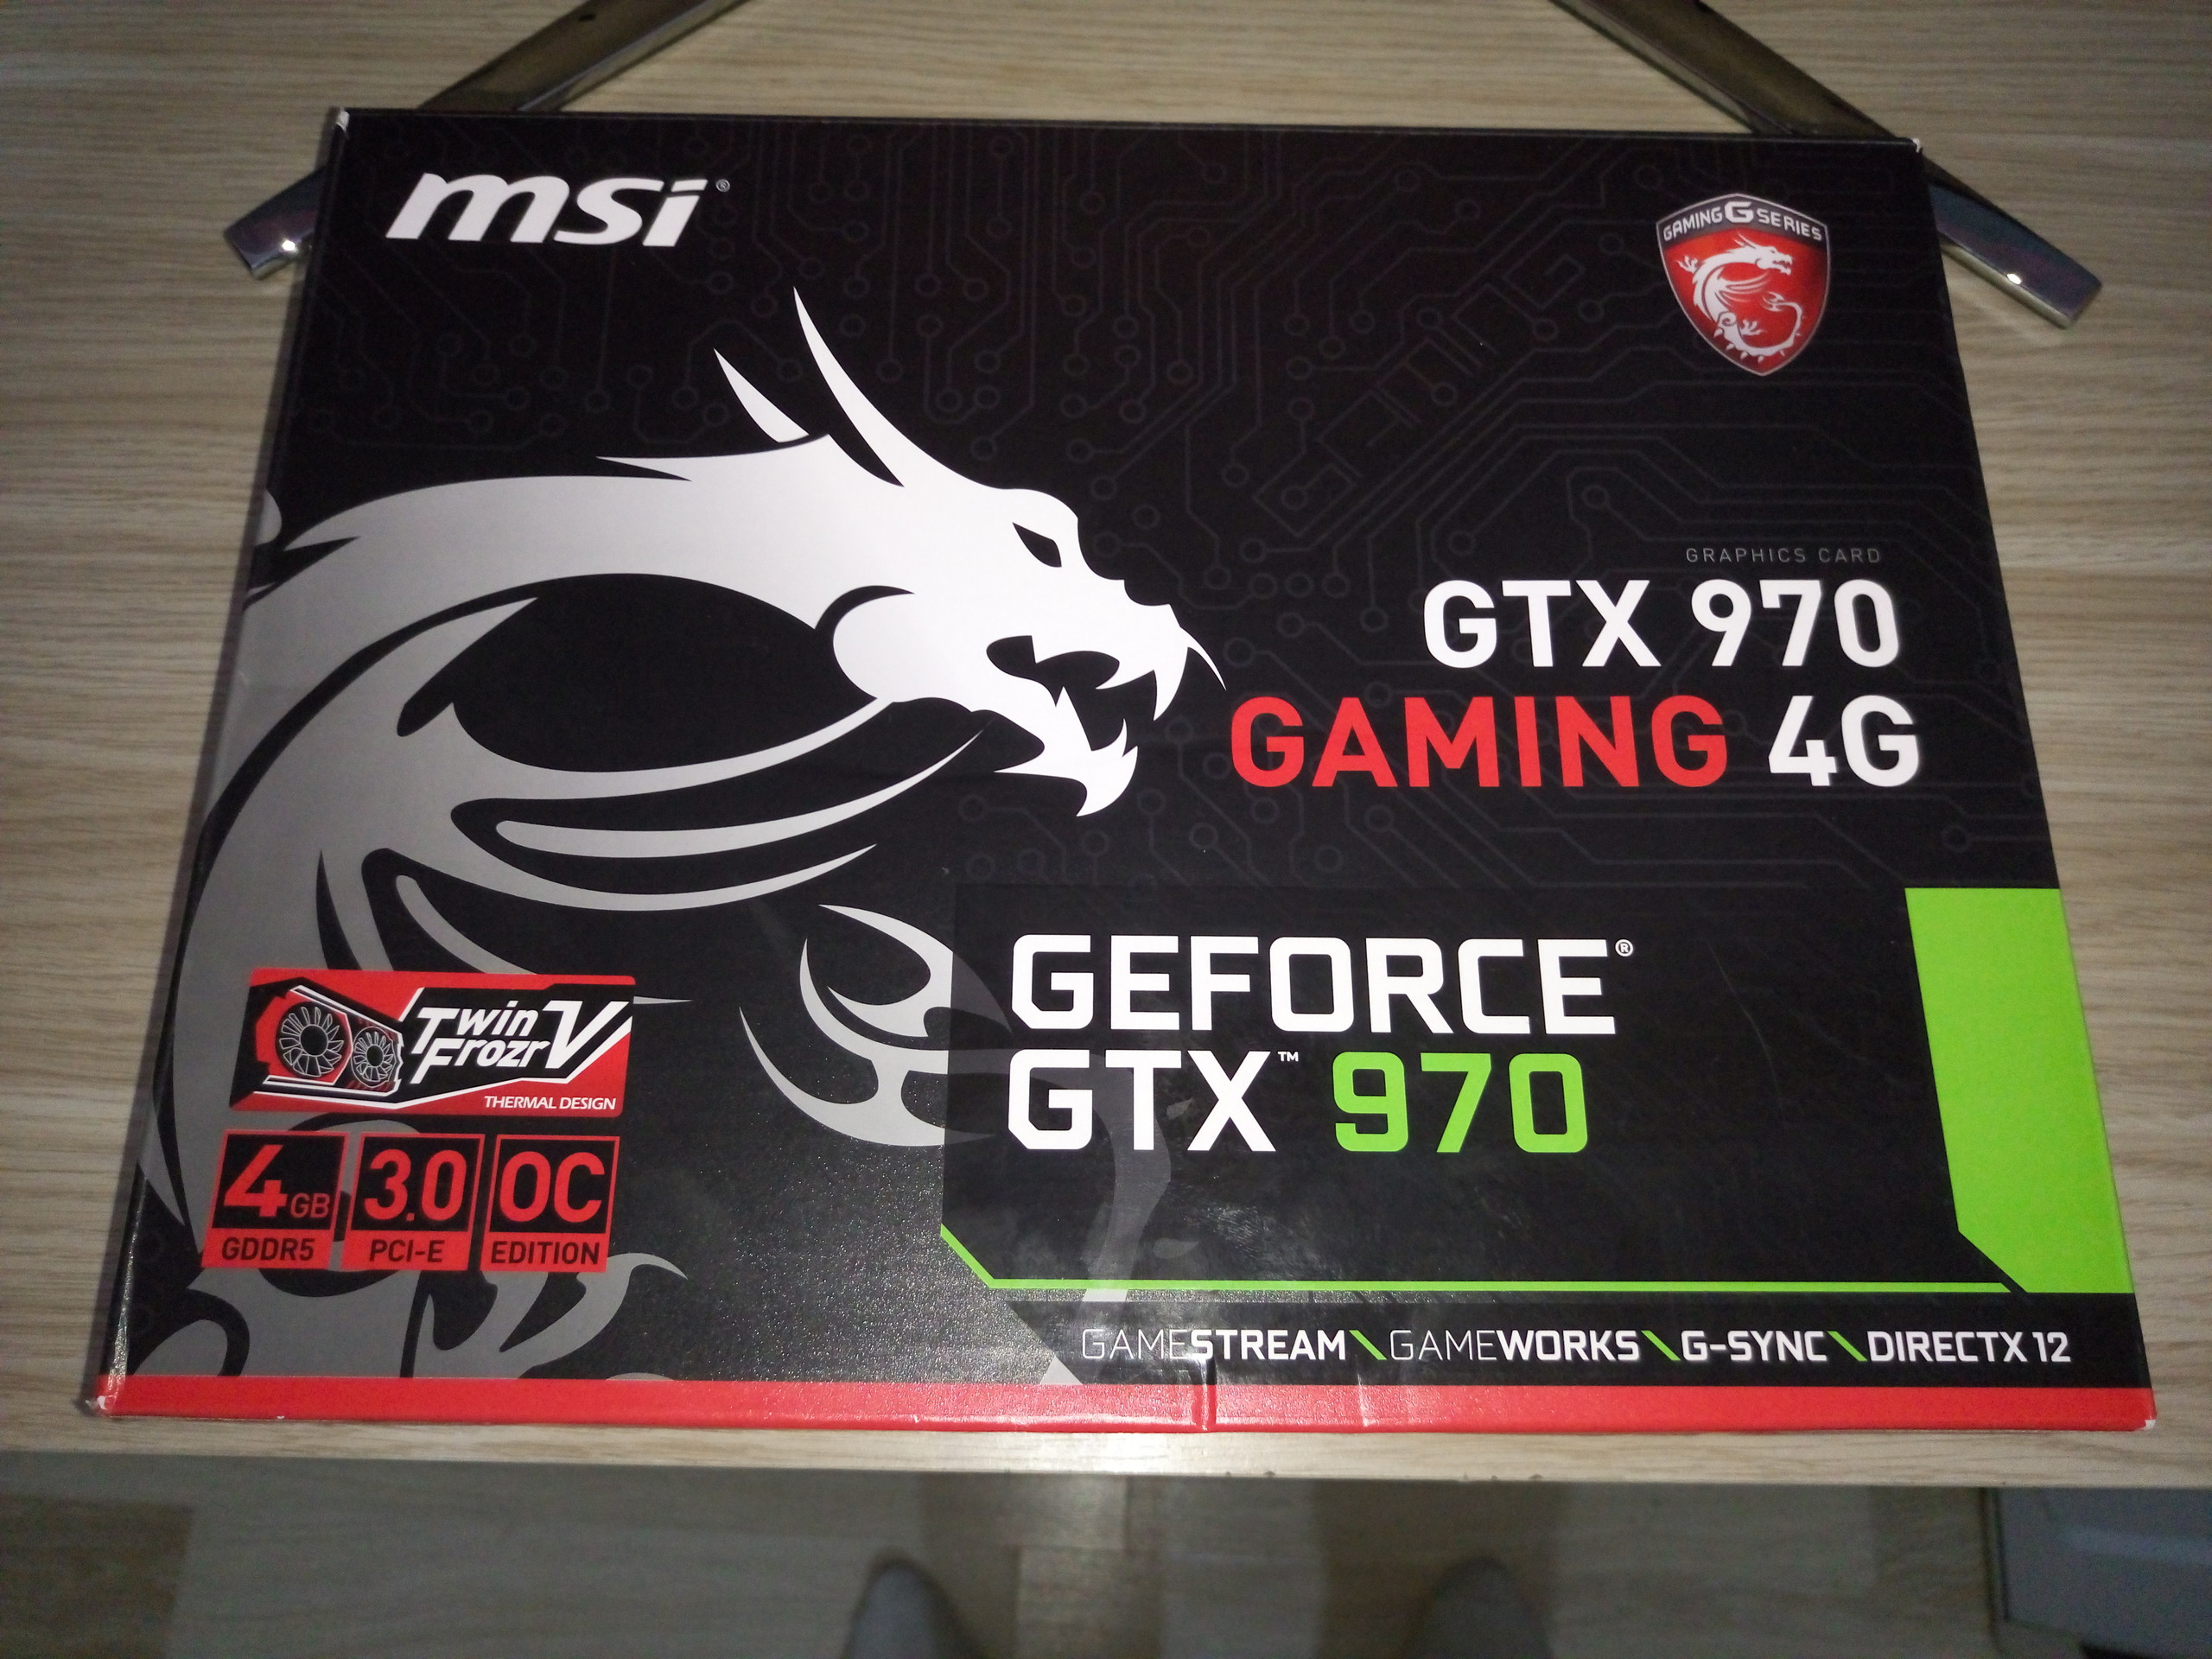 [Satılık] Msi Gtx970 Gaming 4G 900TL